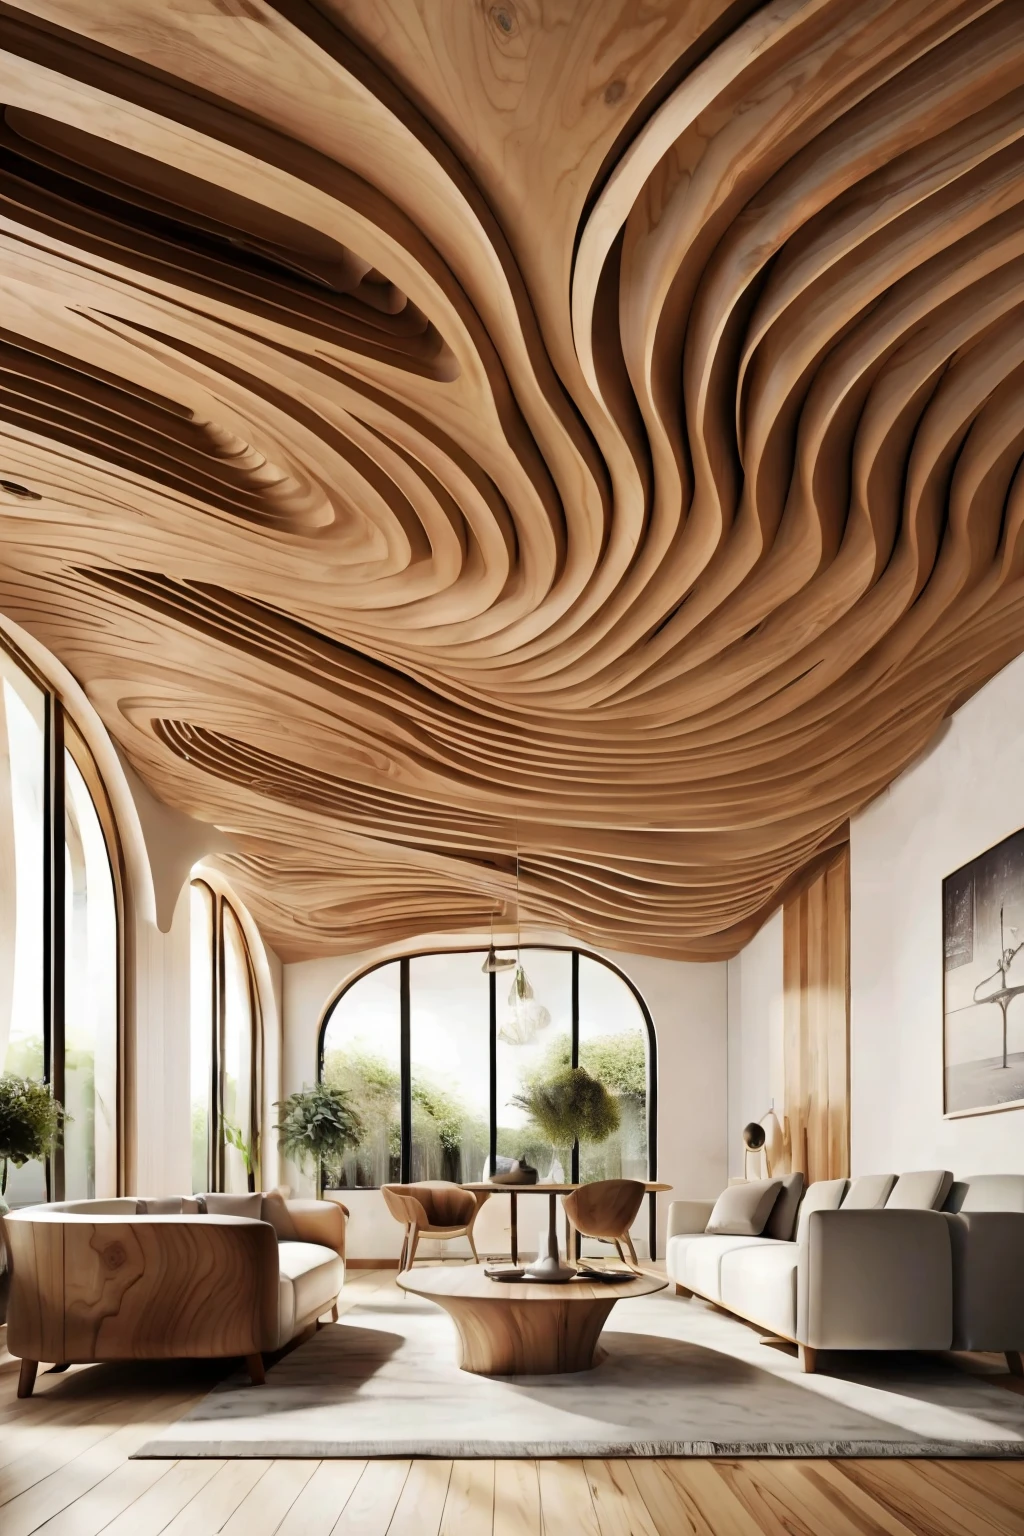 Grand hall avec plafond ondulé en bois(photographiqueréaliste:1.2)Chaos de bois flotté